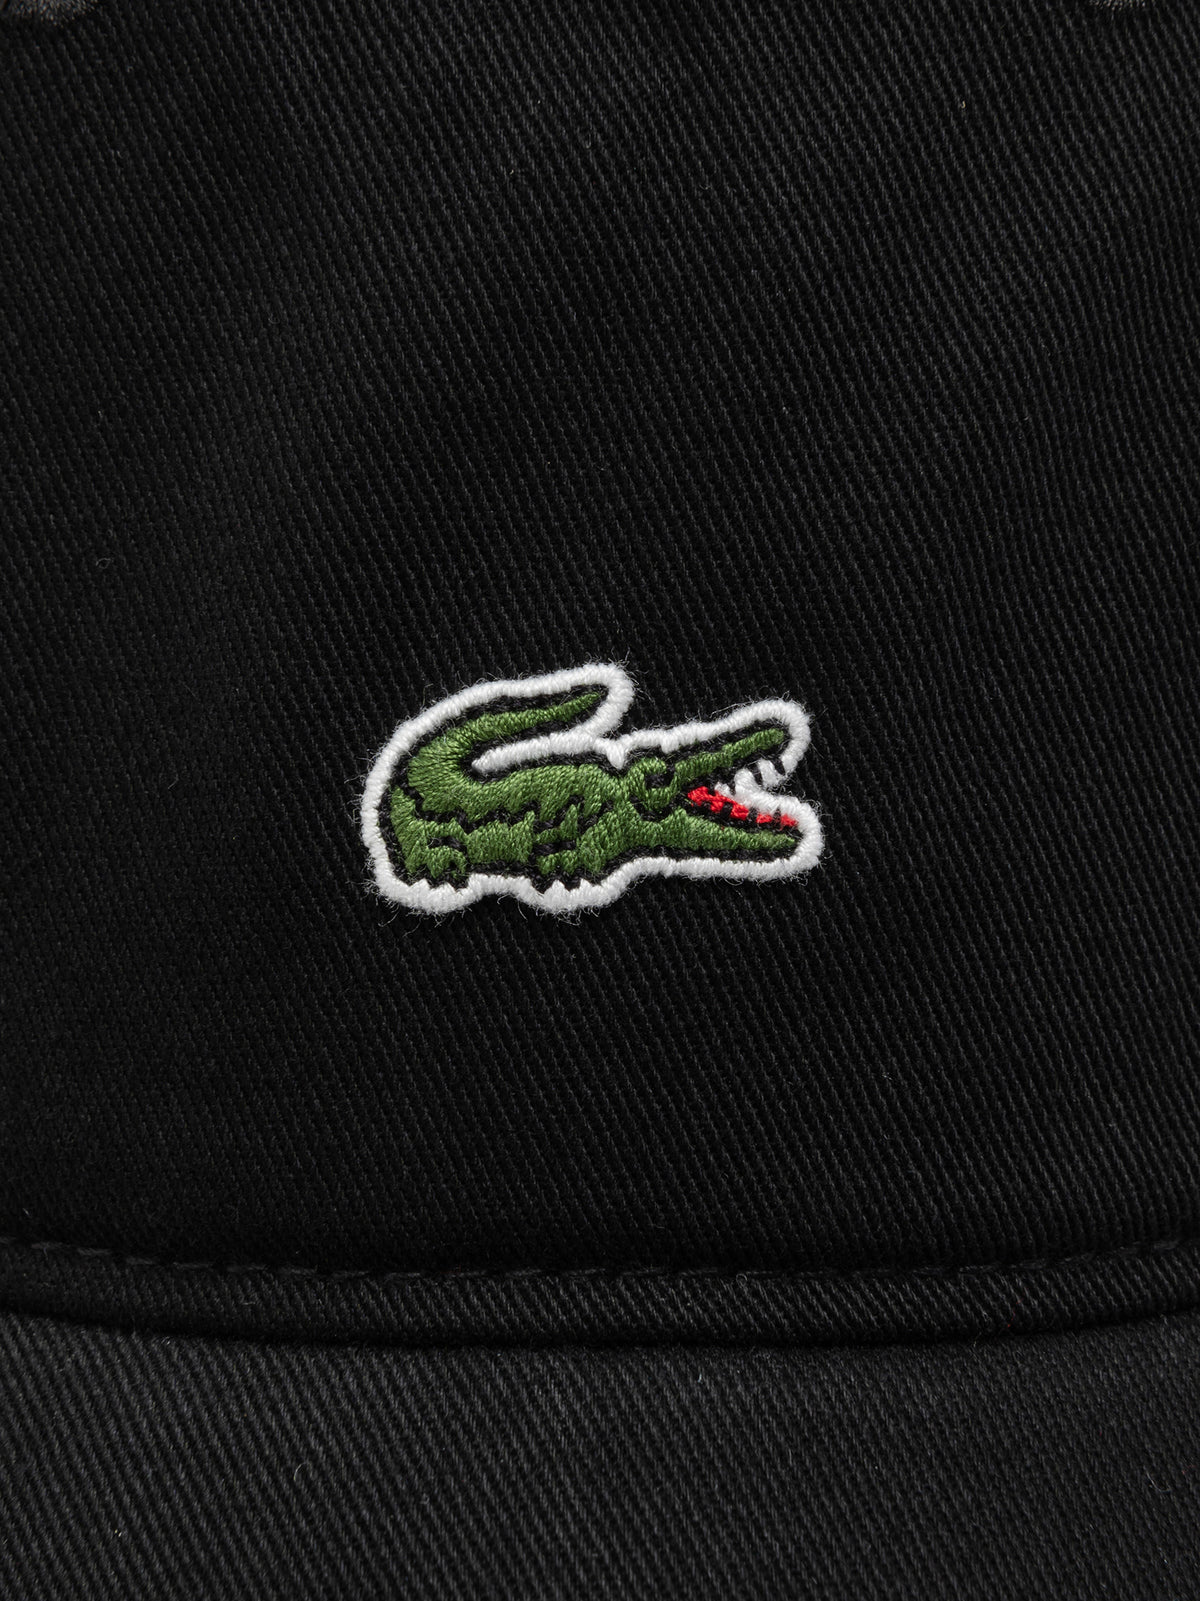 Centre Croc Cap in Black